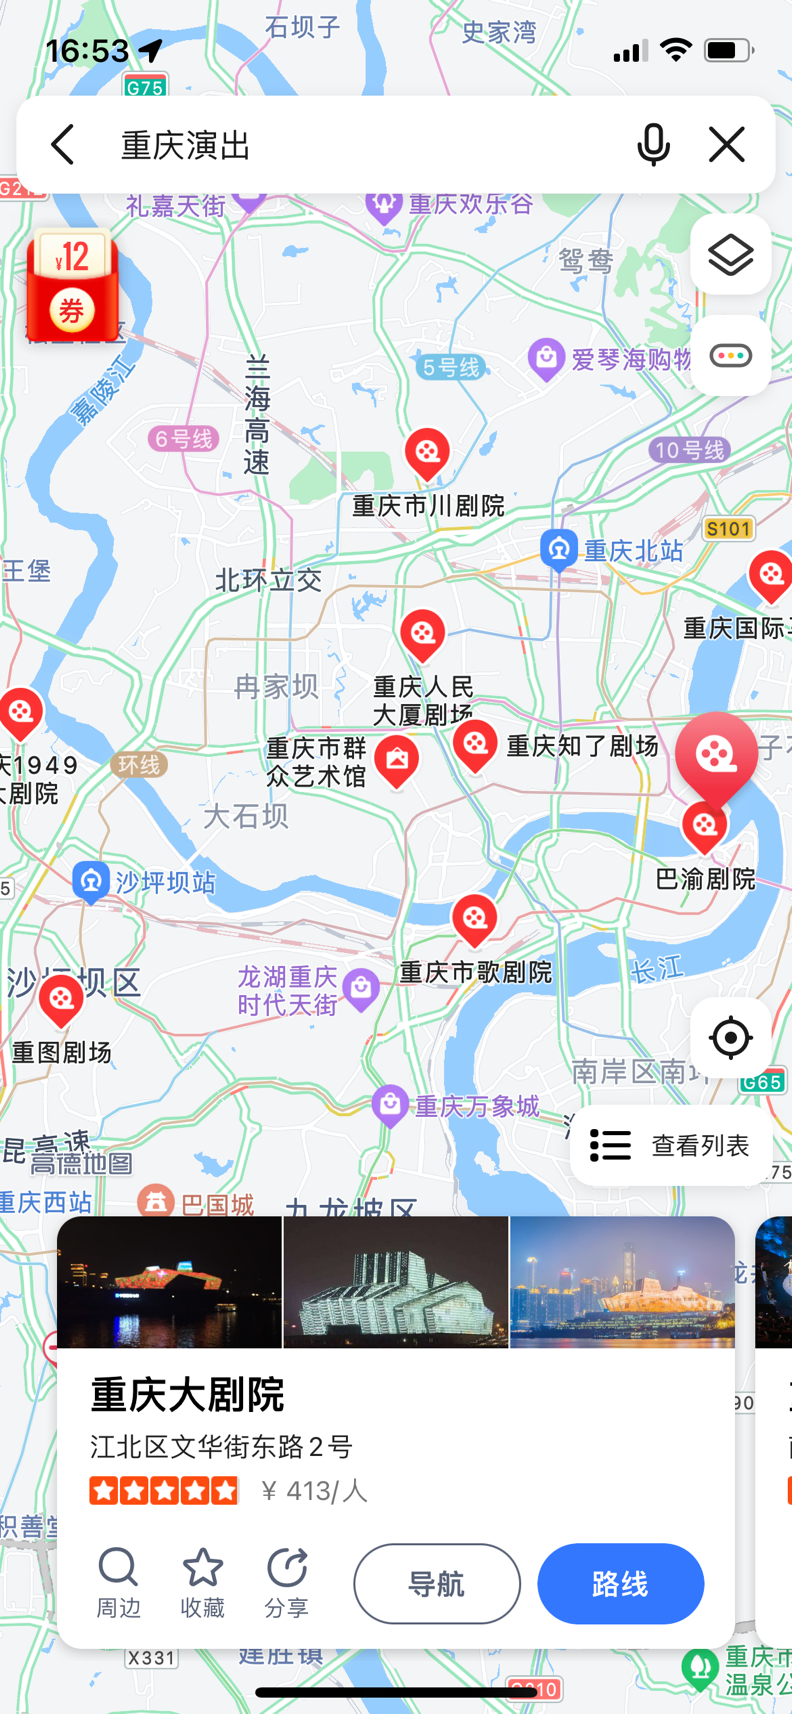 高德上线重庆“演艺地图” 覆盖上百个演艺文化场所